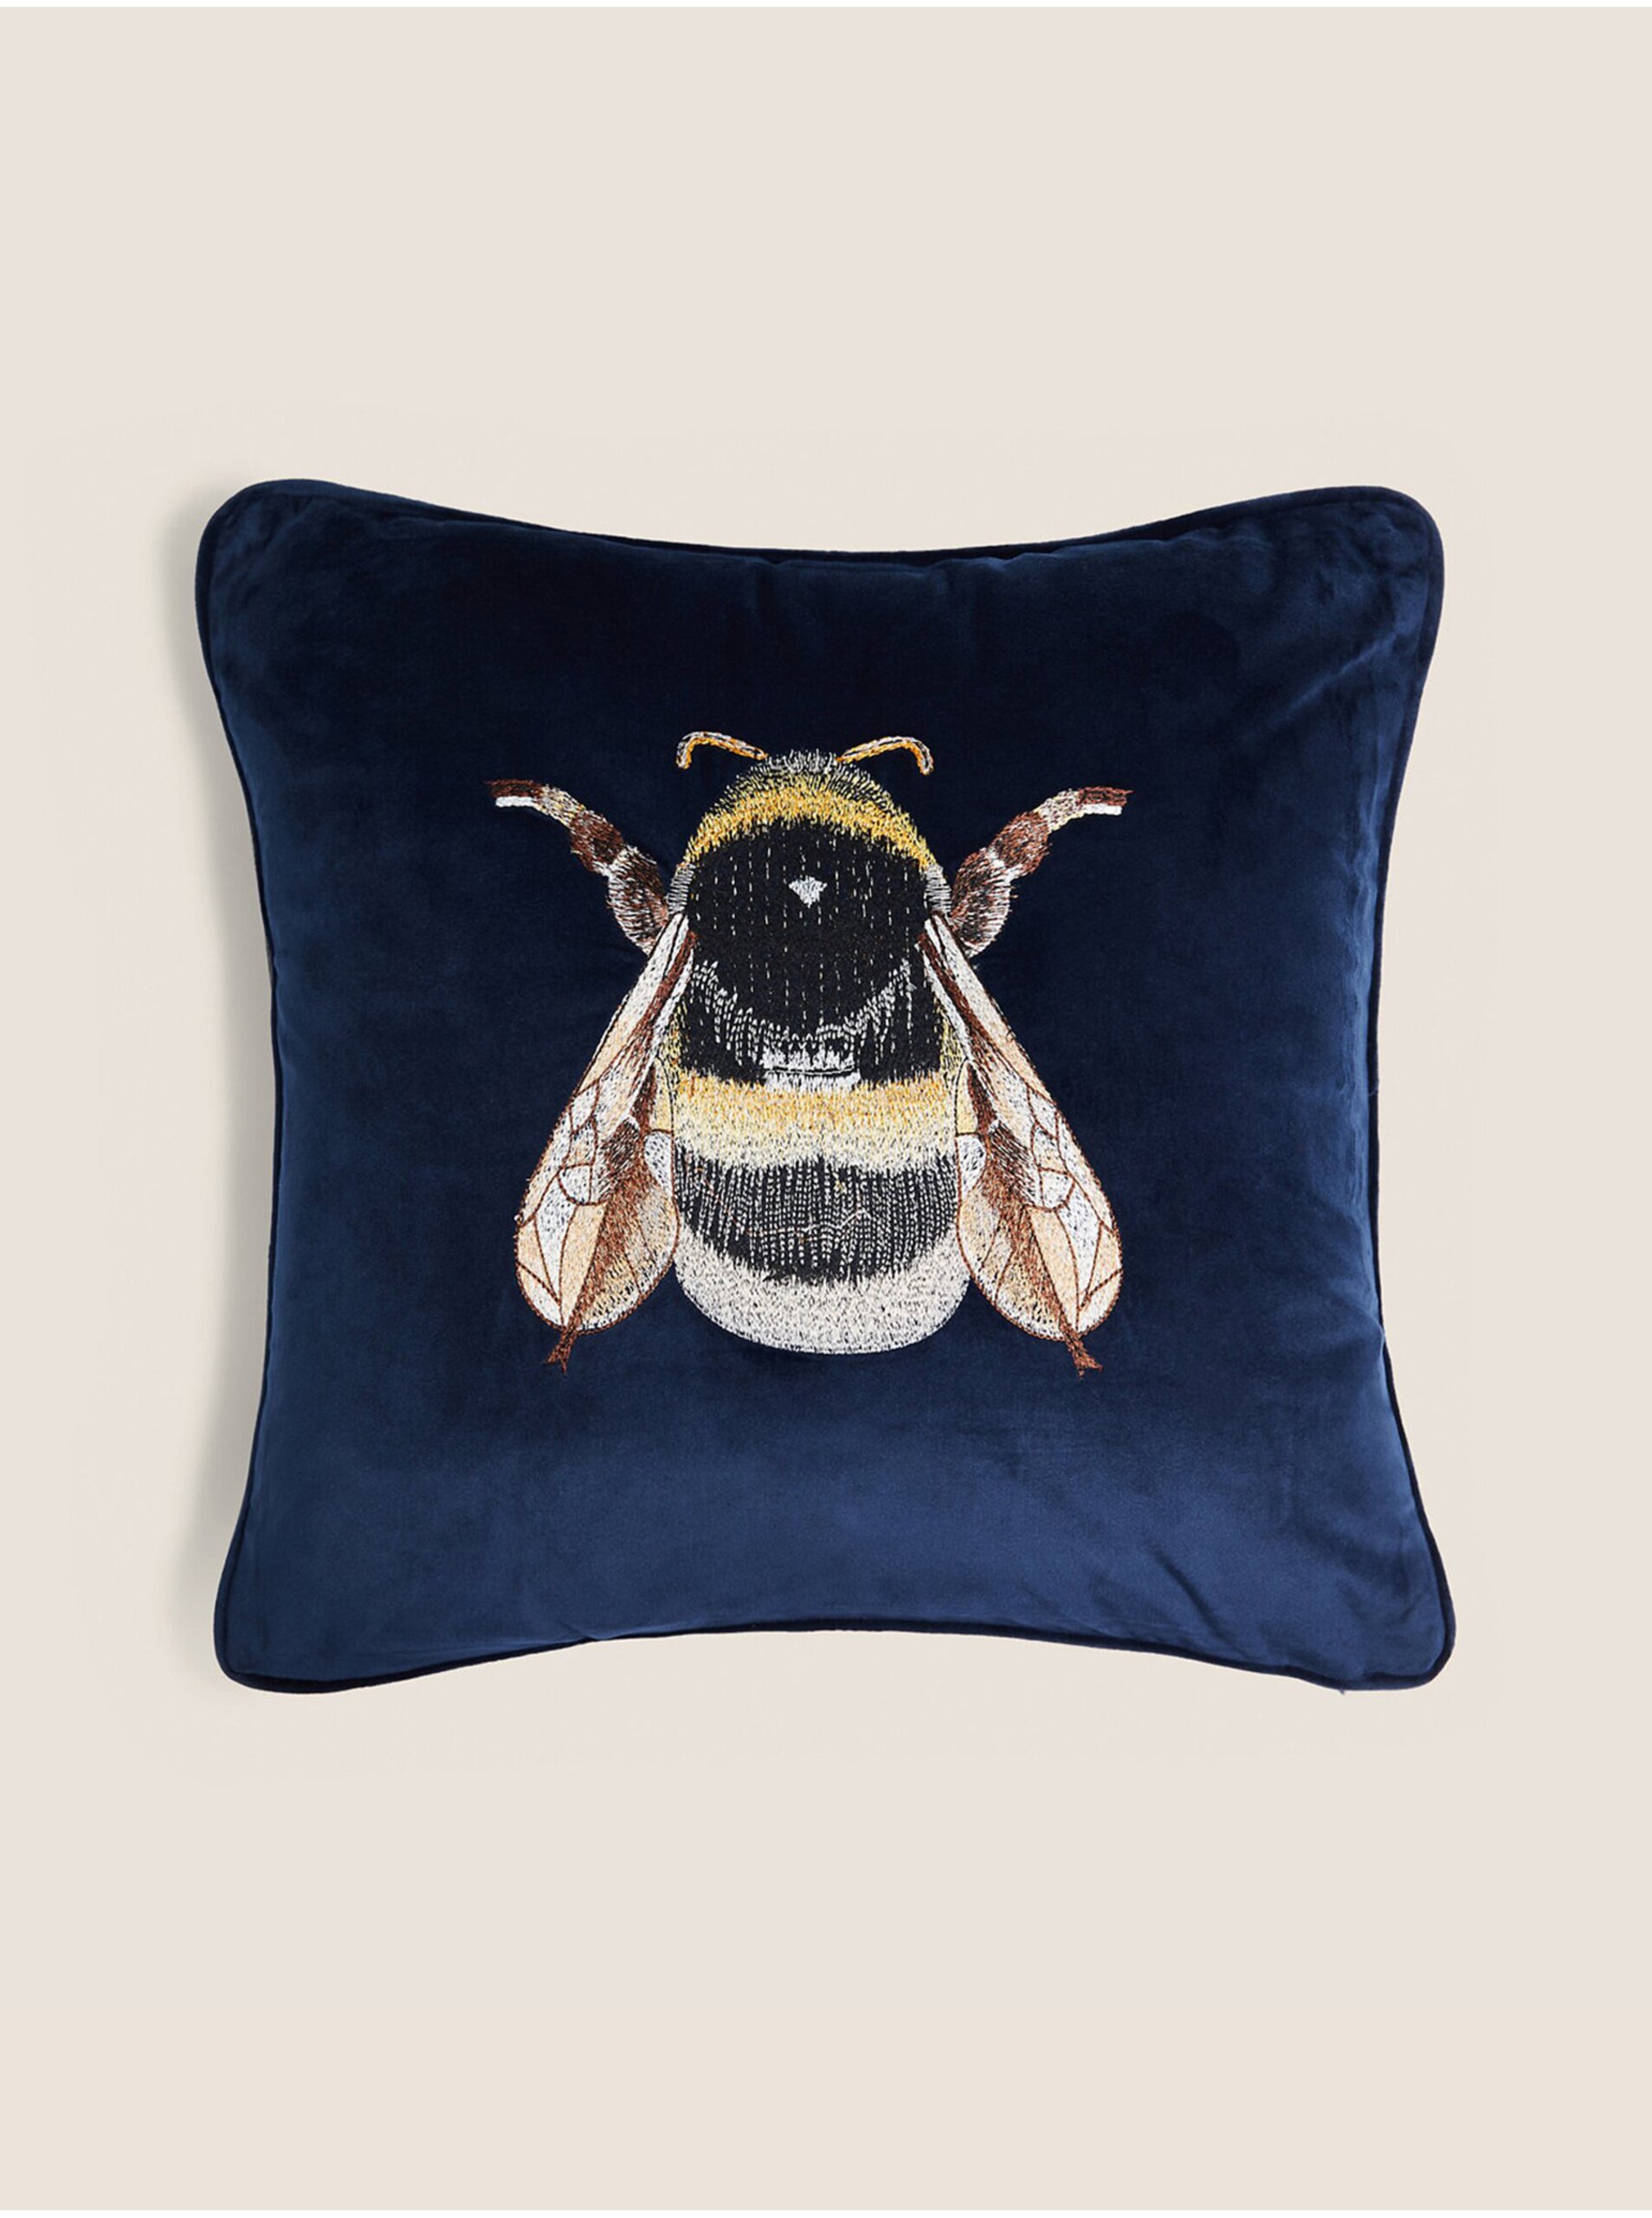 Lacno Tmavomodrý zamatový dekoratívny vankúš s motívom včely Marks & Spencer